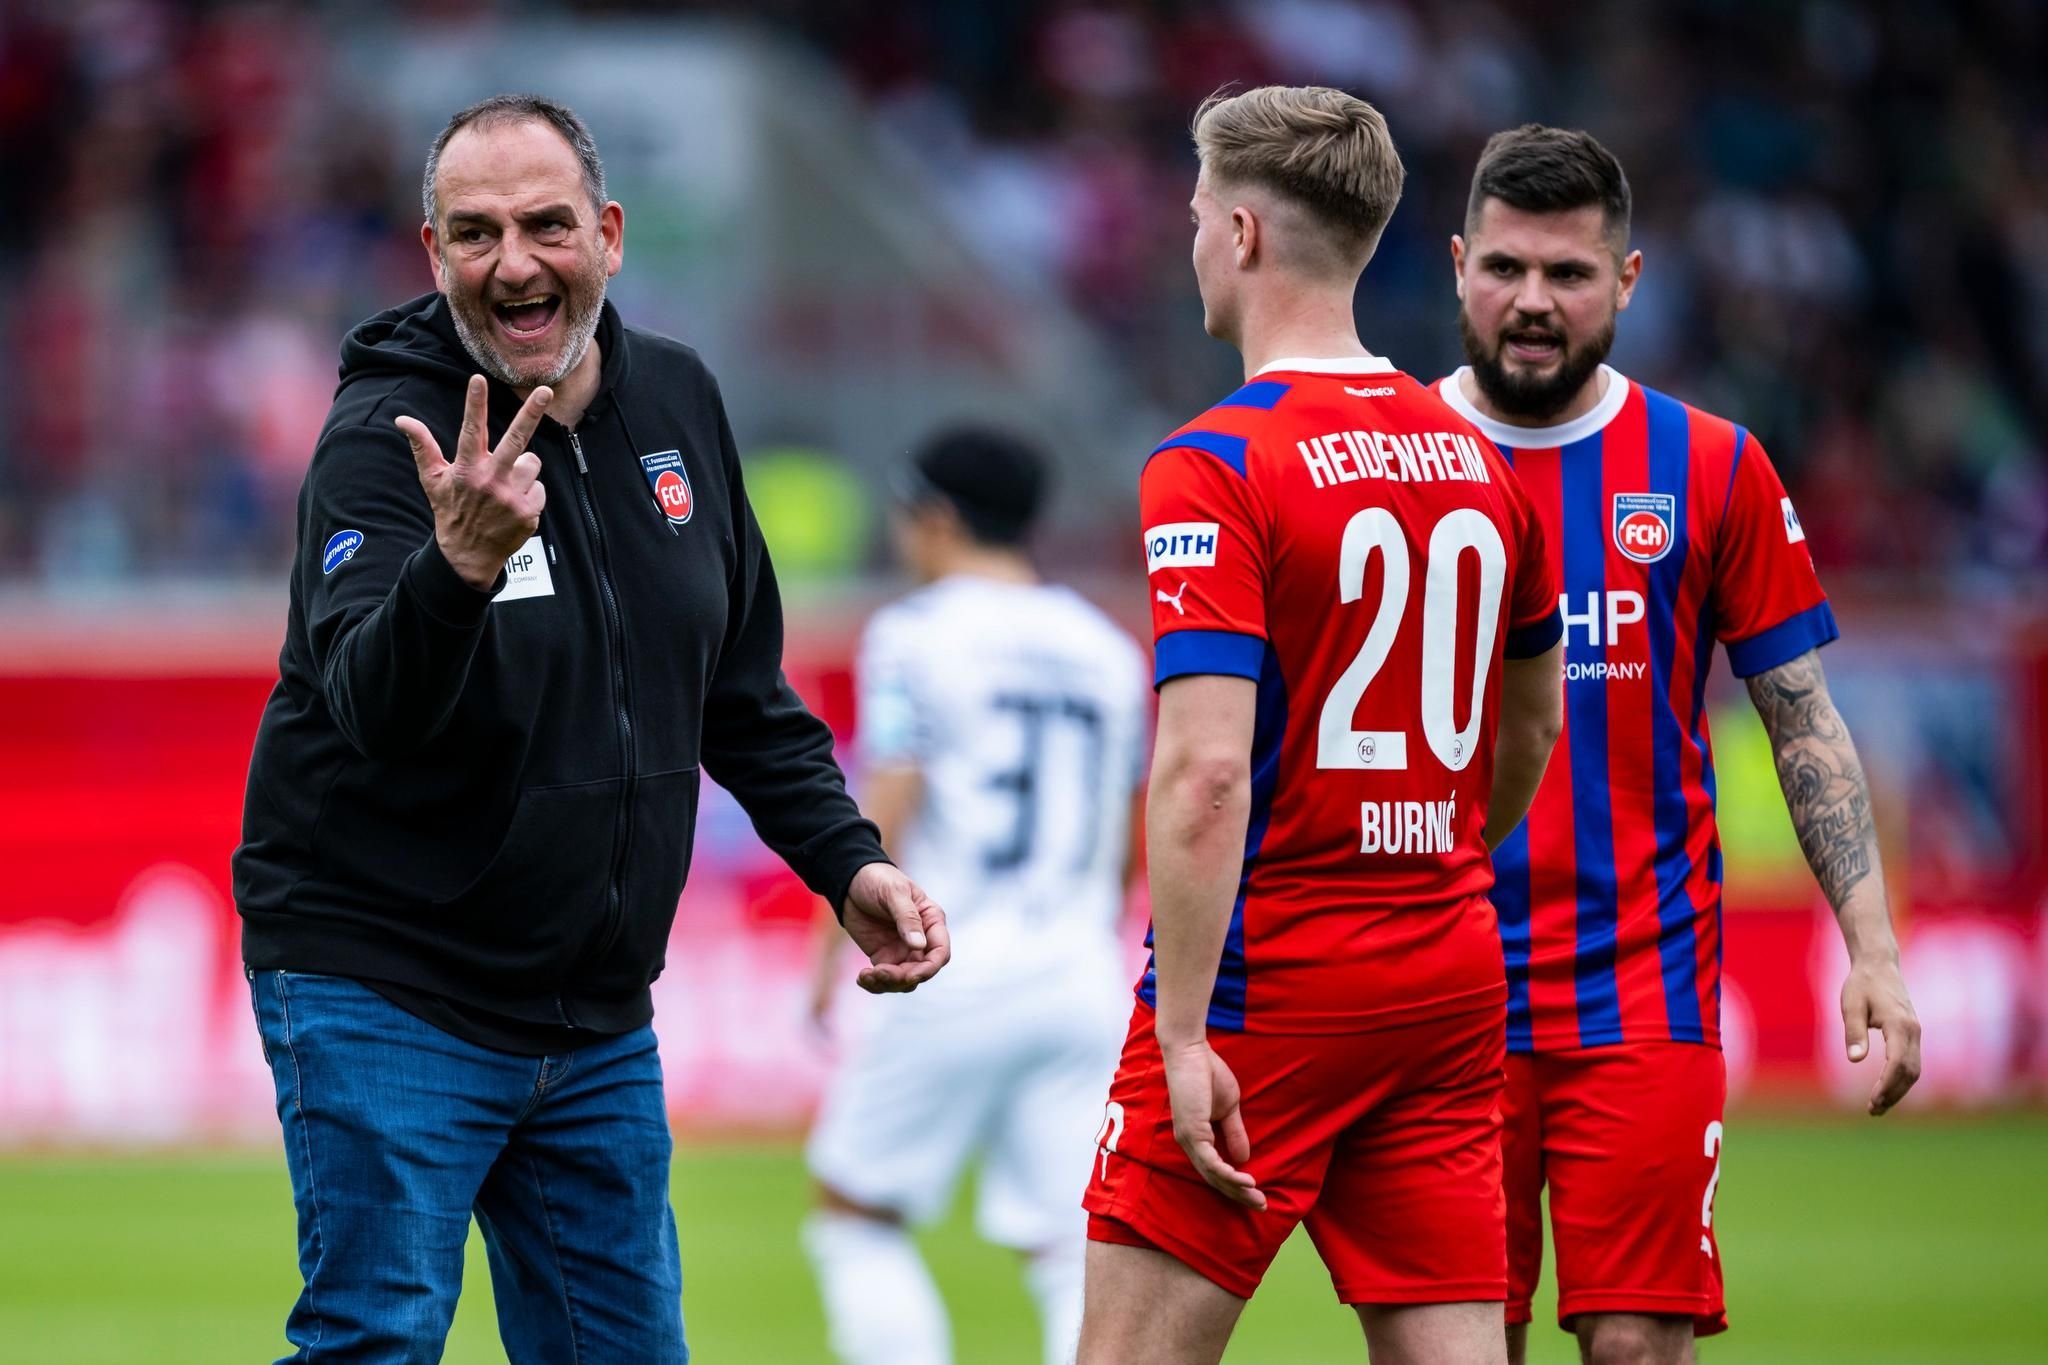 Der FCH steht kurz vor dem Aufstieg in die Bundesliga